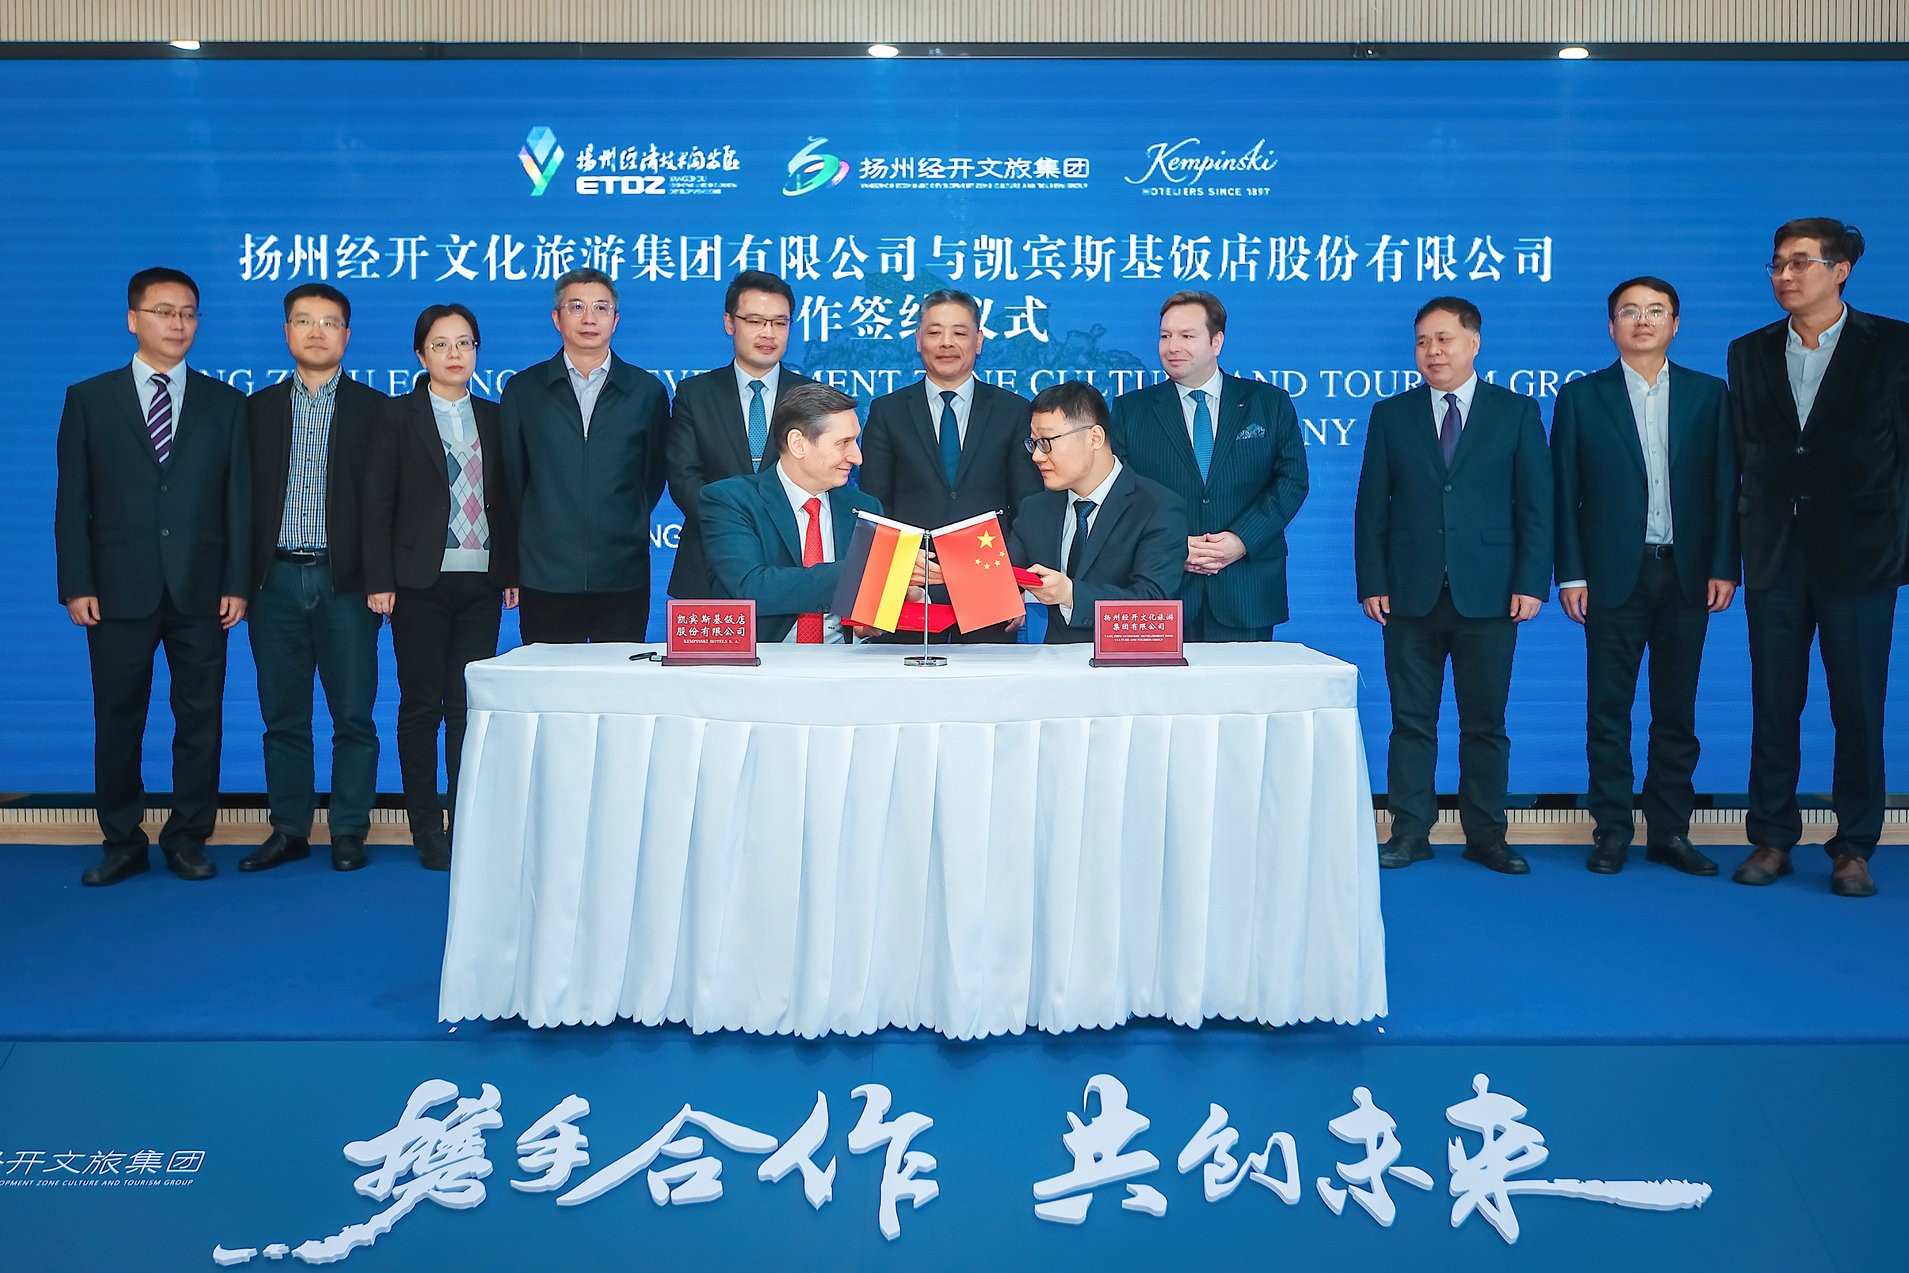 Signing-ceremony-in-Yangzhou_copyright-Kempinski-Hotels.JPG